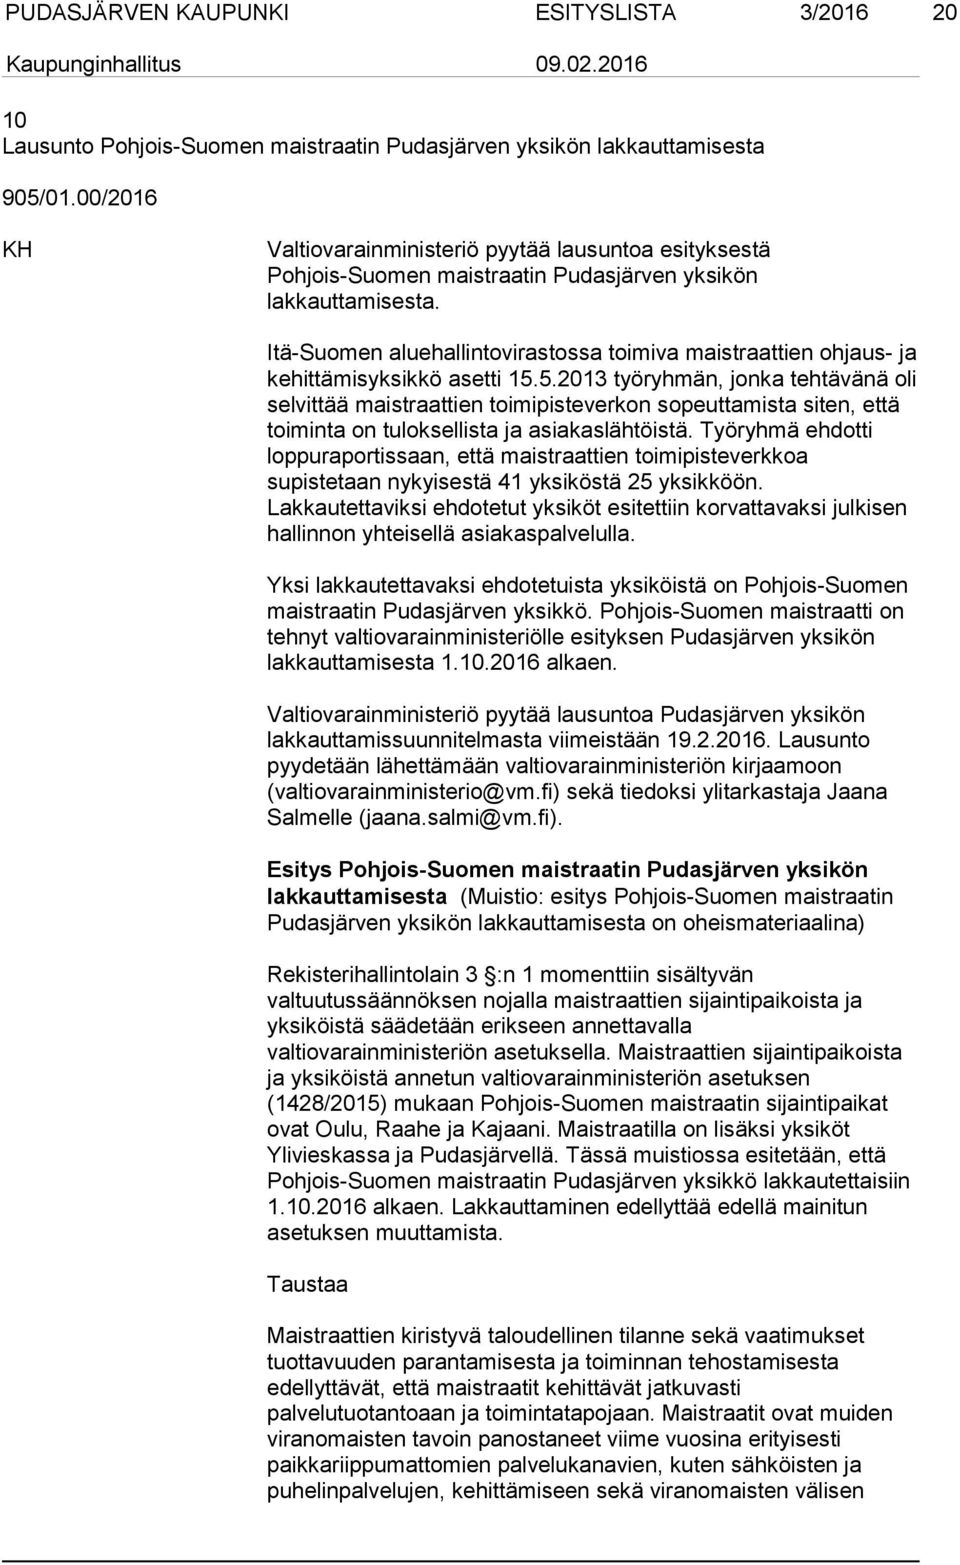 Itä-Suomen aluehallintovirastossa toimiva maistraattien ohjaus- ja kehittämisyksikkö asetti 15.